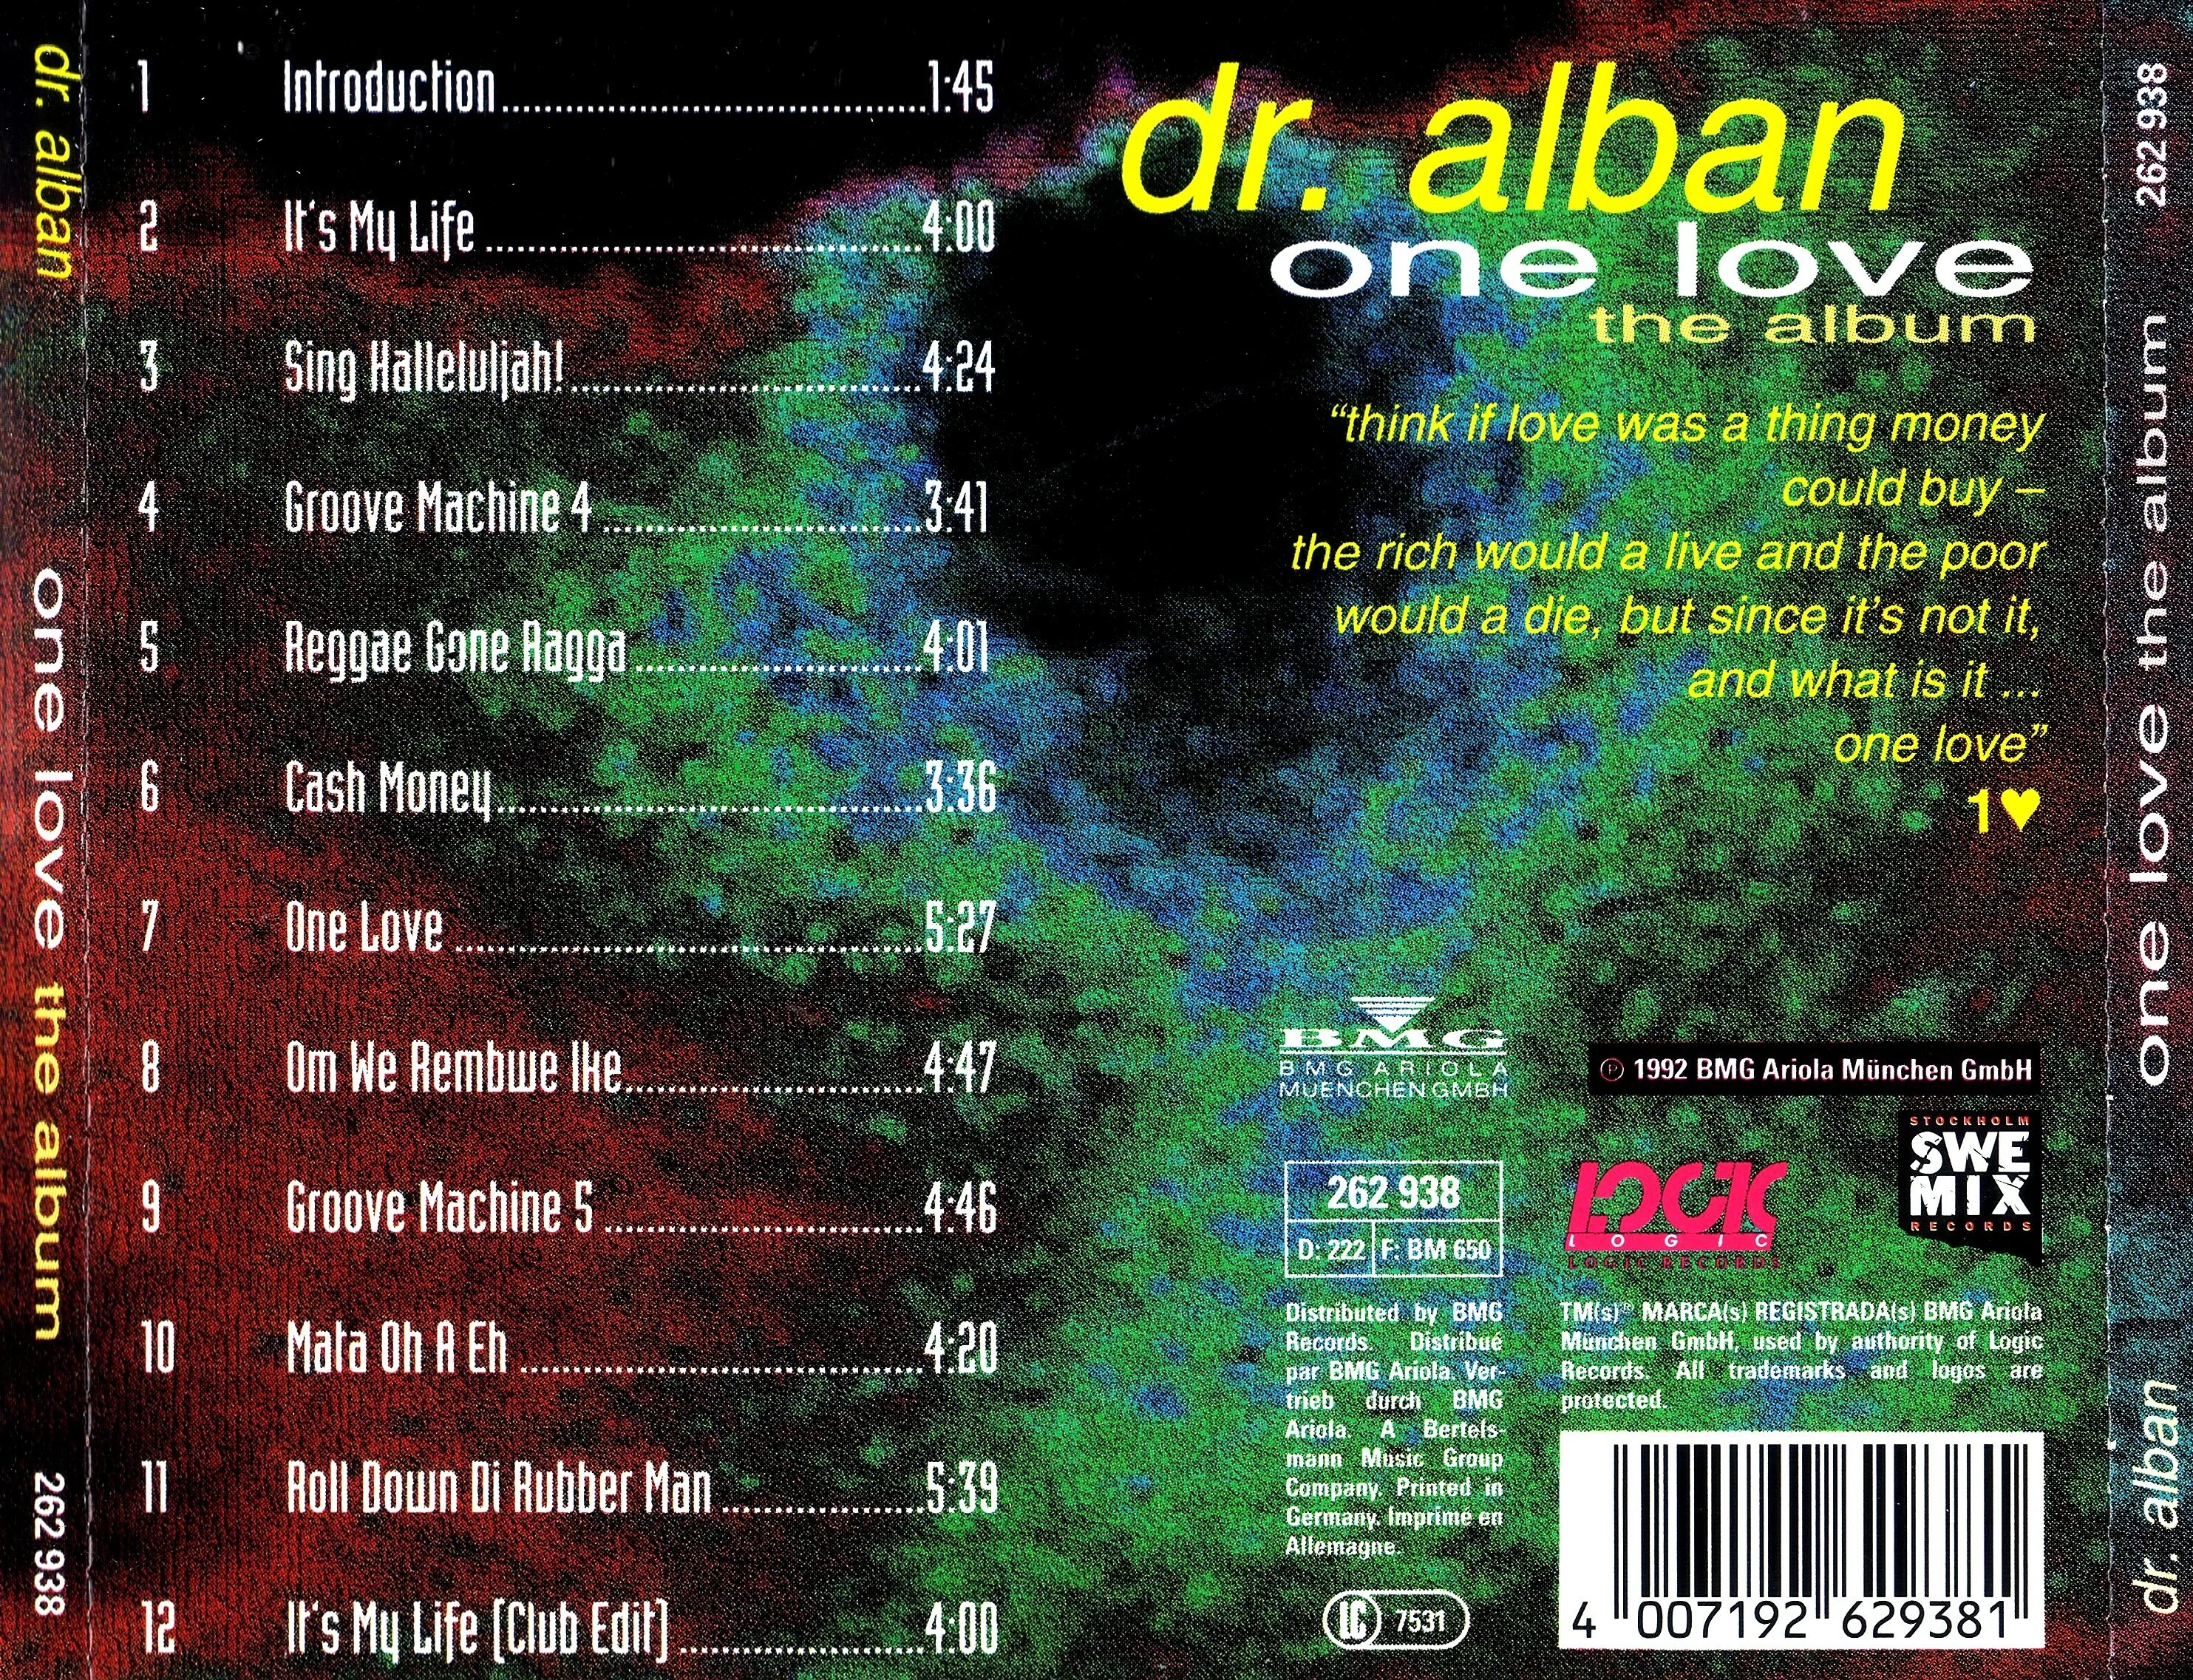 Оне лов доктор. Dr. Alban one Love the album 1992. Доктор албан 1992. Dr. Alban one Love (the album). One Love доктор албан.